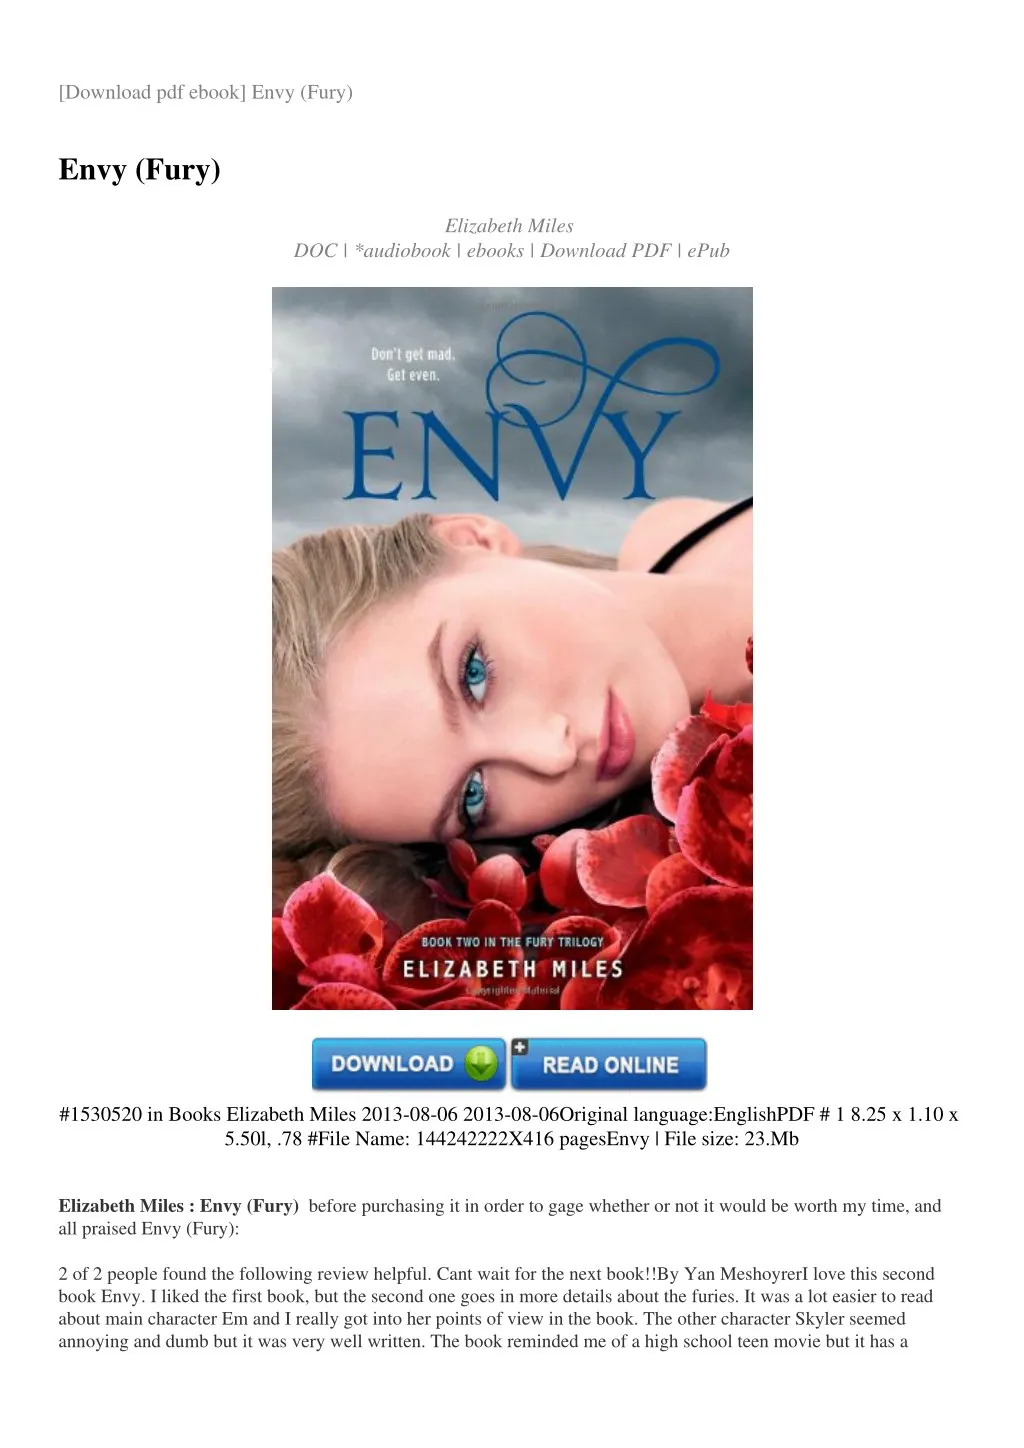 download pdf ebook envy fury